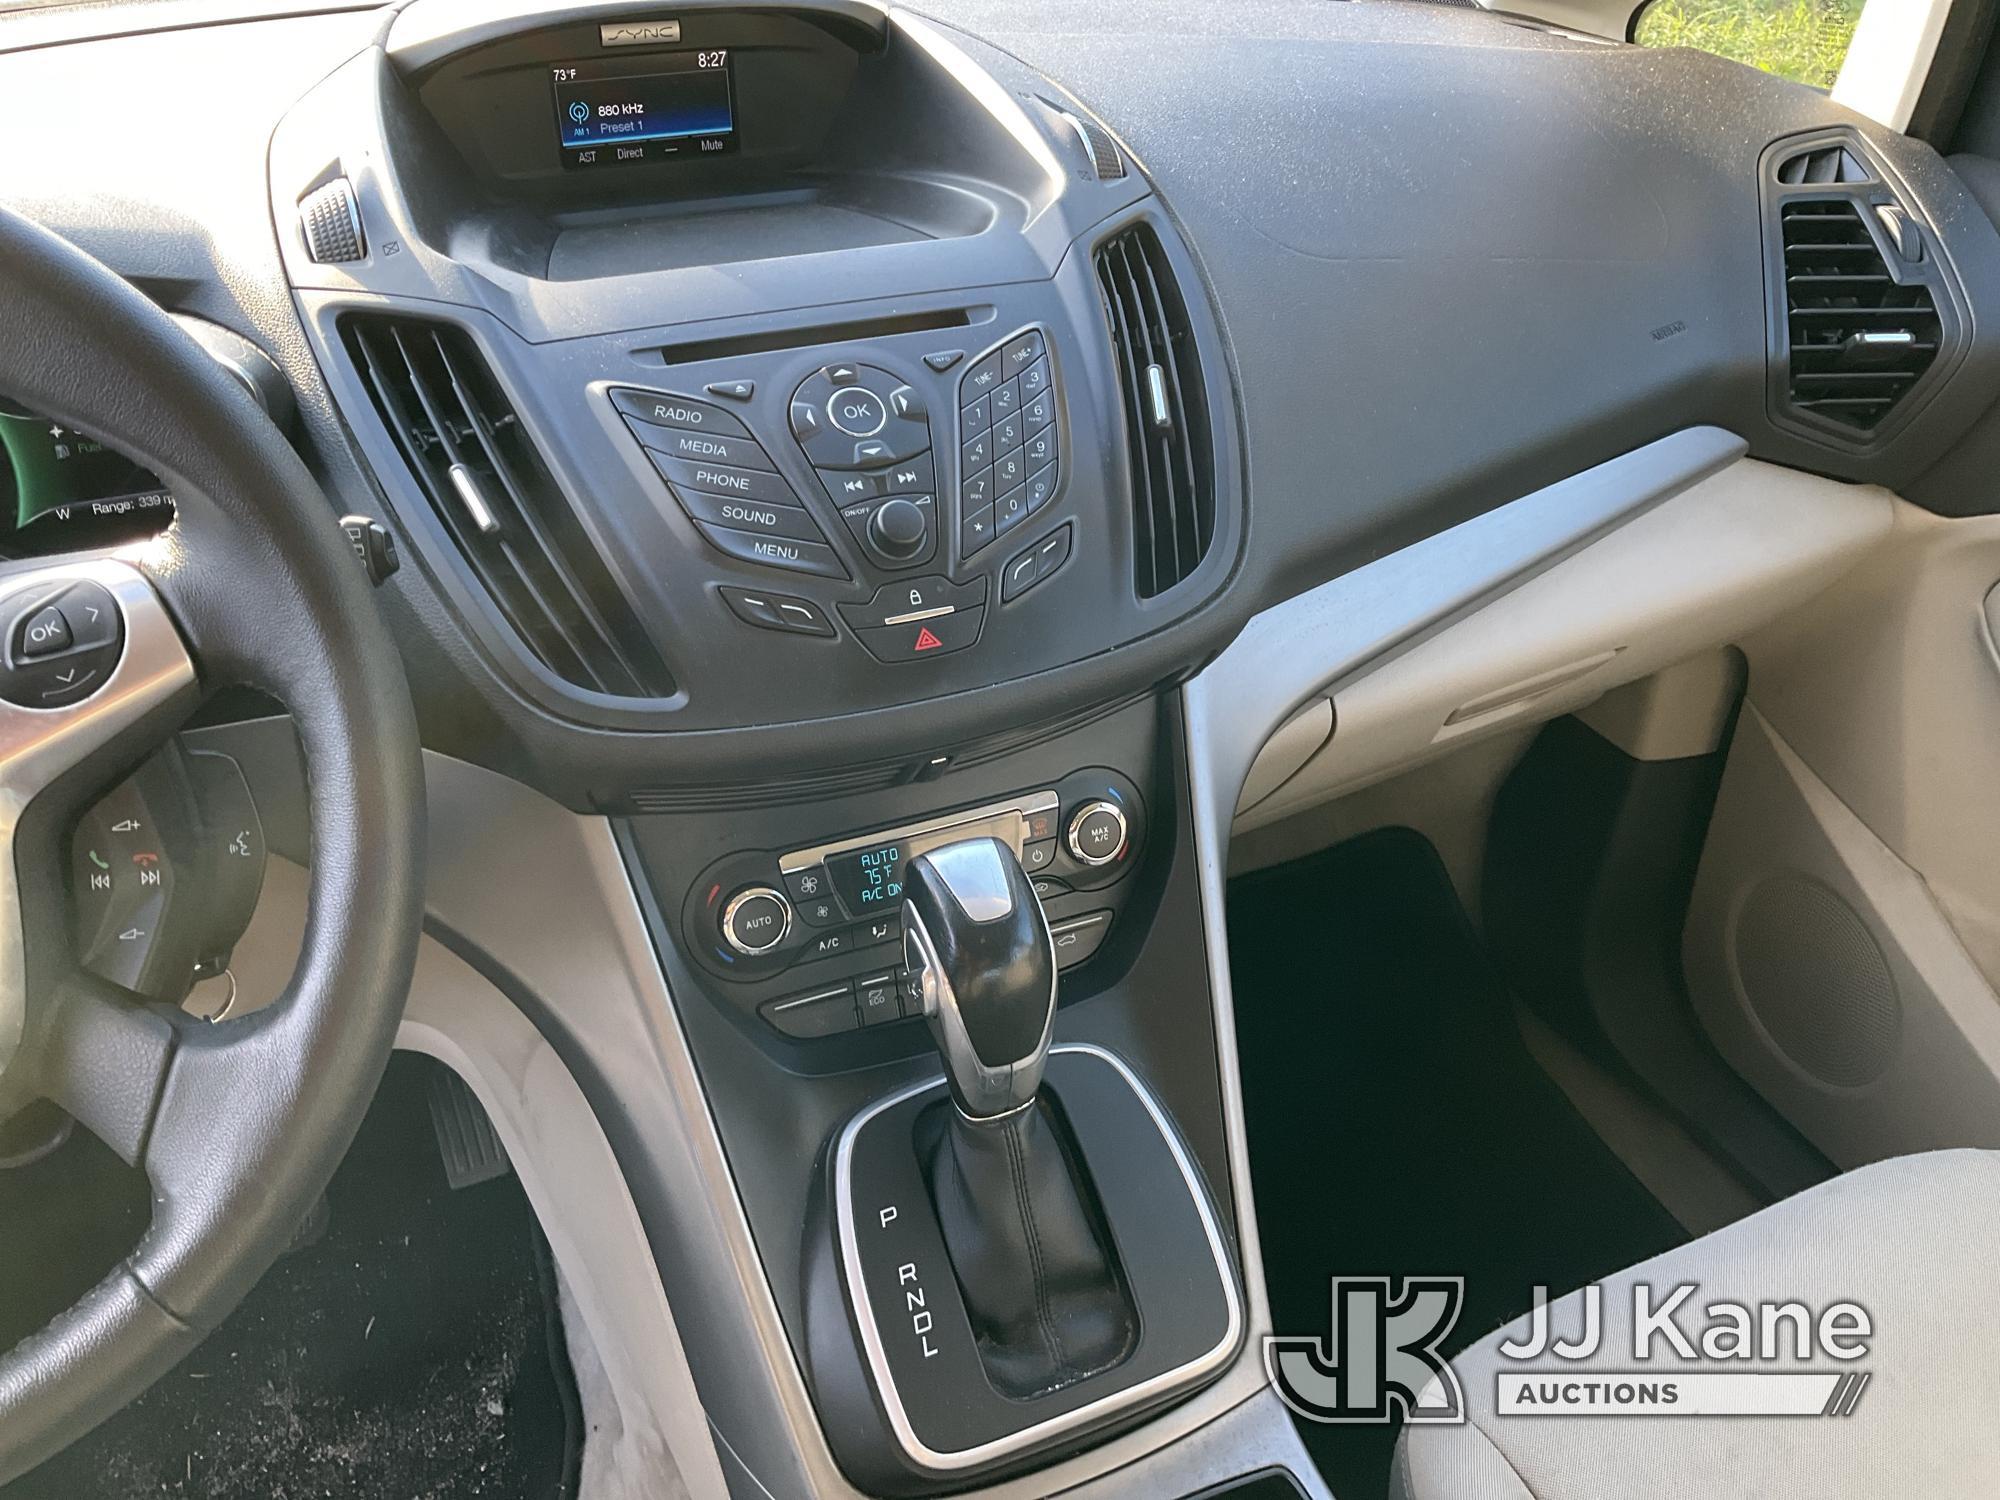 (Bellport, NY) 2016 Ford C-Max Hybrid 4-Door Hatch Back Runs & Moves, Stop Safely Warning On, Bad Ba